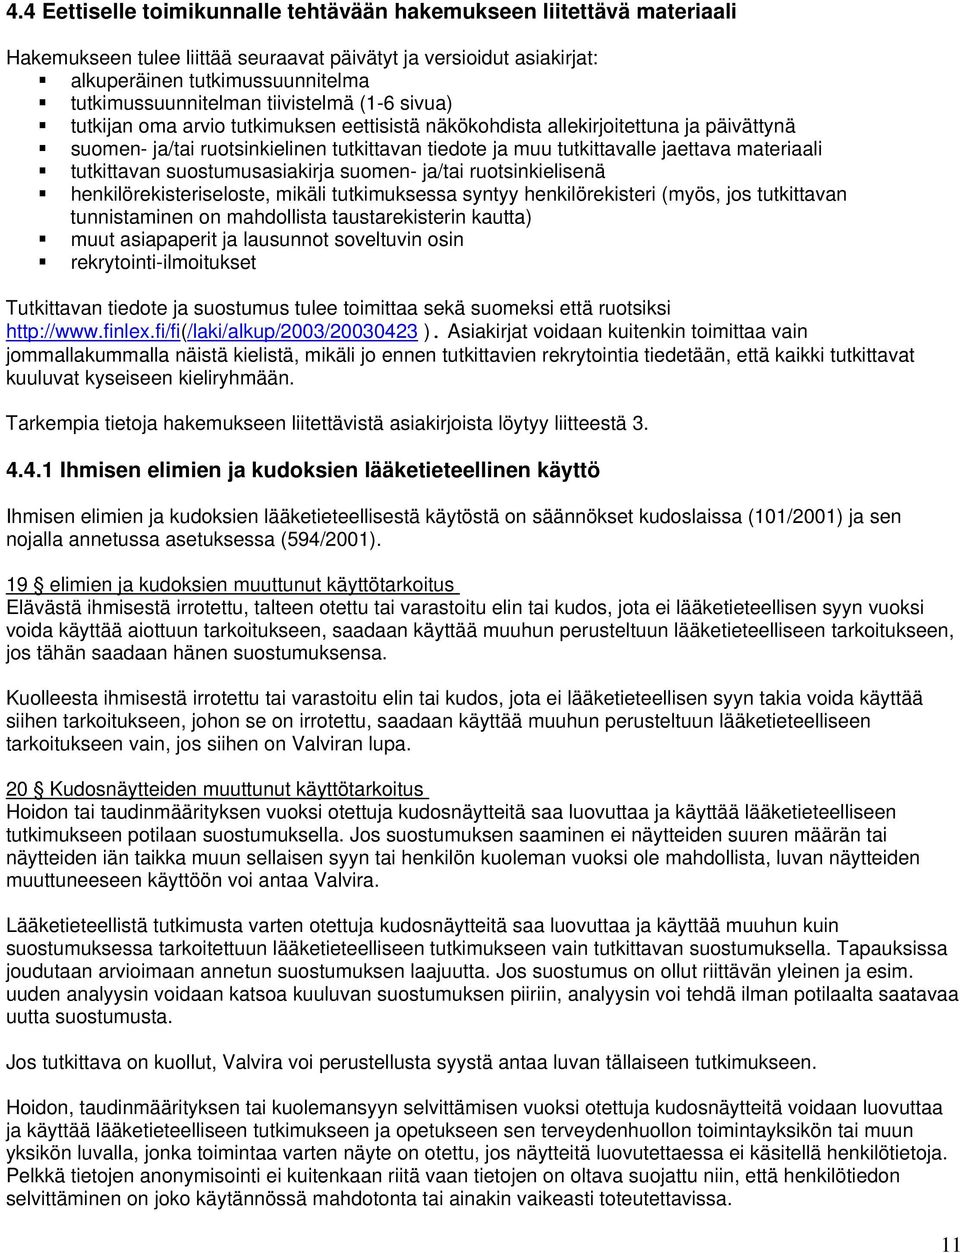 materiaali tutkittavan suostumusasiakirja suomen- ja/tai ruotsinkielisenä henkilörekisteriseloste, mikäli tutkimuksessa syntyy henkilörekisteri (myös, jos tutkittavan tunnistaminen on mahdollista